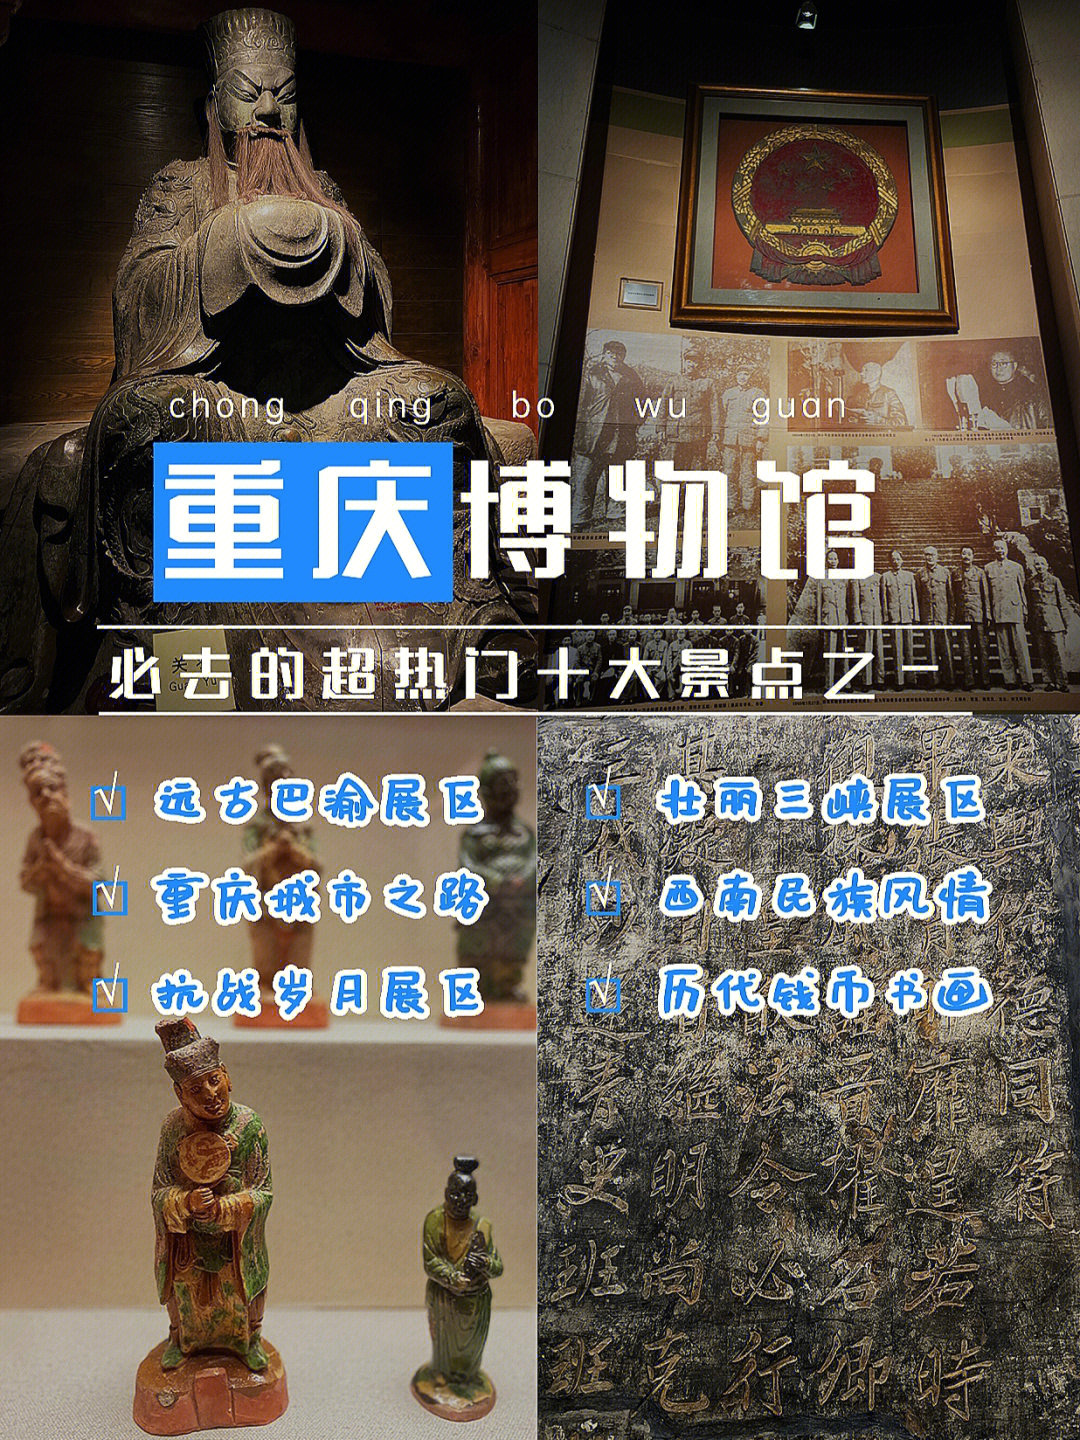 笔记灵感重庆中国三峡博物馆(重庆博物馆)是一座集巴渝文化,三峡